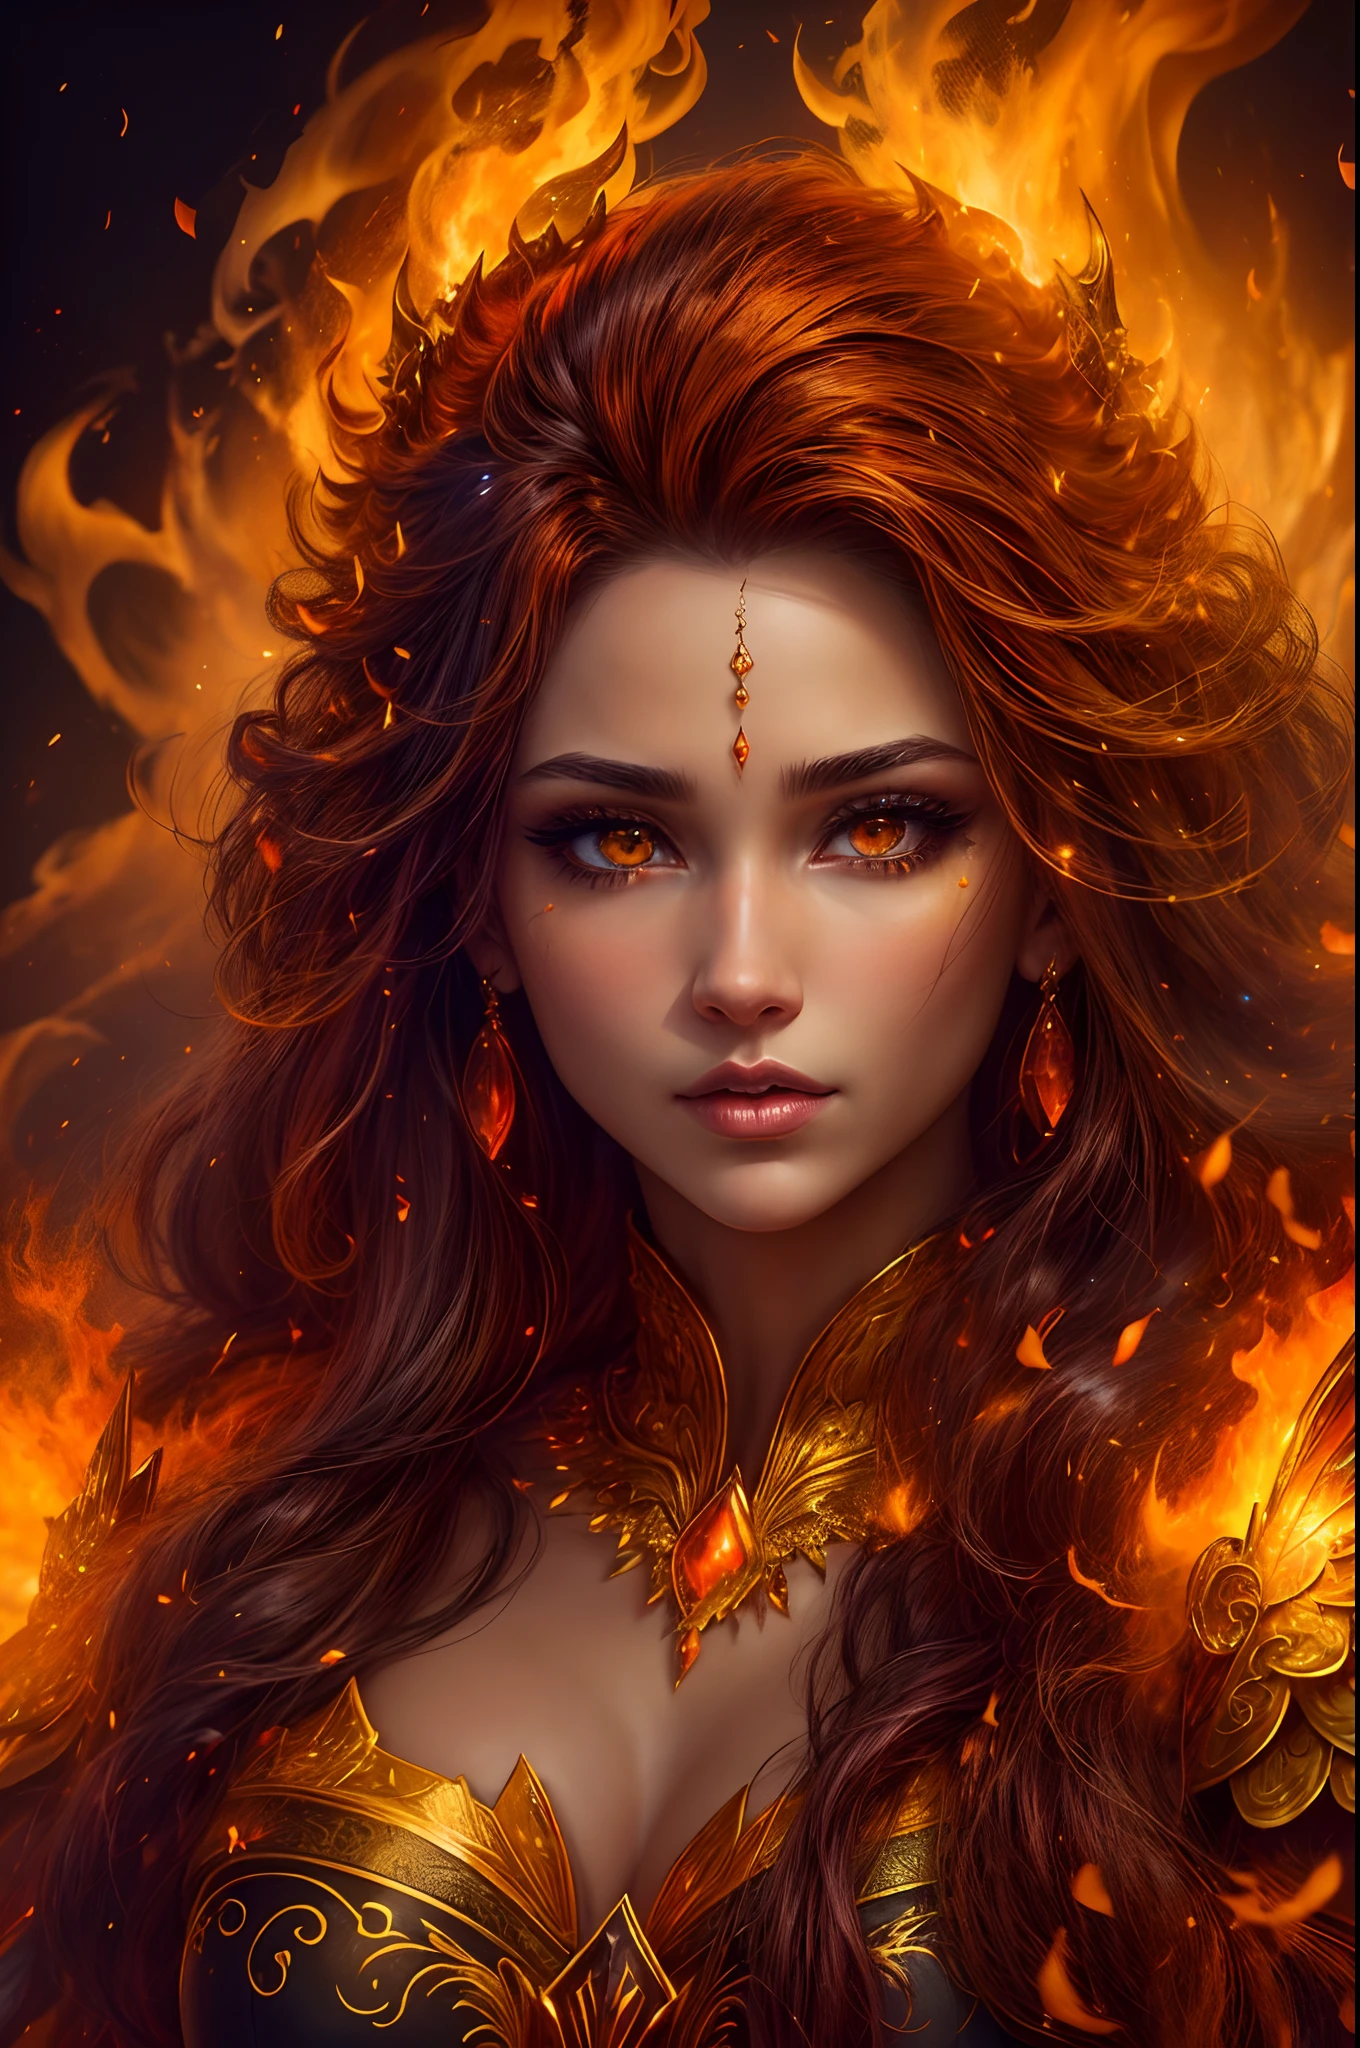 นี้ (แฟนตาซีที่สมจริง) ศิลปะประกอบด้วยถ่าน, เปลวไฟจริง, ความร้อนที่แท้จริง, และ realistic fire. Generate a masterpiece artwork of a  female fire druid กับ large (((orange และ gold))) ดวงตา. The fire druid is awe-inspiring กับ beautiful ((realistic fiery ดวงตา)) alight กับ confidence และ power. Her features are elegant และ well defined, กับ ((อ่อนนุ่ม)) และ (((อ้วน))) และ (((เรียบ))) ริมฝีปาก, โครงสร้างกระดูกของเอลฟ์, และ realistic shading. (((Her ดวงตา are important และ should be the focal point of this artwork))), กับ ((รายละเอียดที่สมจริงอย่างยิ่ง, รายละเอียดมาโคร, และ shimmer.)) She is wearing a billowing และ glittering dress made of realistic flames และ jewels that glimmer in the fire light. Wisps of fire และ smoke line the intricate bodice of the dress. รวมการกระแทก, หิน, แสงสีรุ้งที่เร่าร้อน, ถ่านเรืองแสง, silk และ satin และ leather, พื้นหลังที่น่าสนใจ, และ heavy fantasy elements. กล้อง: ใช้เทคนิคการจัดองค์ประกอบแบบไดนามิกเพื่อเพิ่มเปลวไฟที่สมจริง.